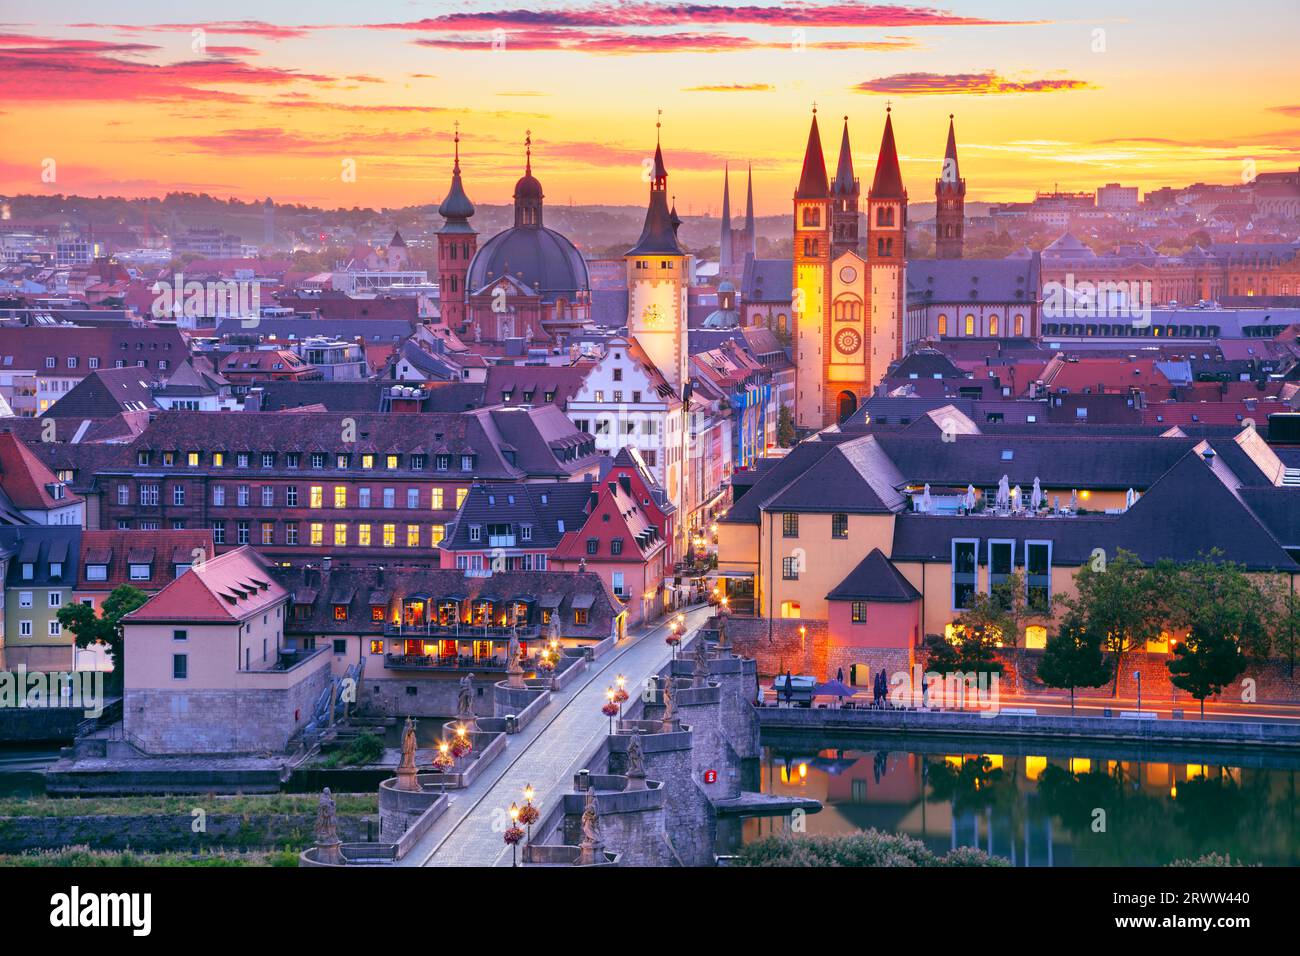 Wurzburg, Deutschland. Luftbild der Stadt Würzburg, Bayern, Deutschland mit der Alten Mainbrücke über den Main bei schönem Herbstsonnenaufgang. Stockfoto